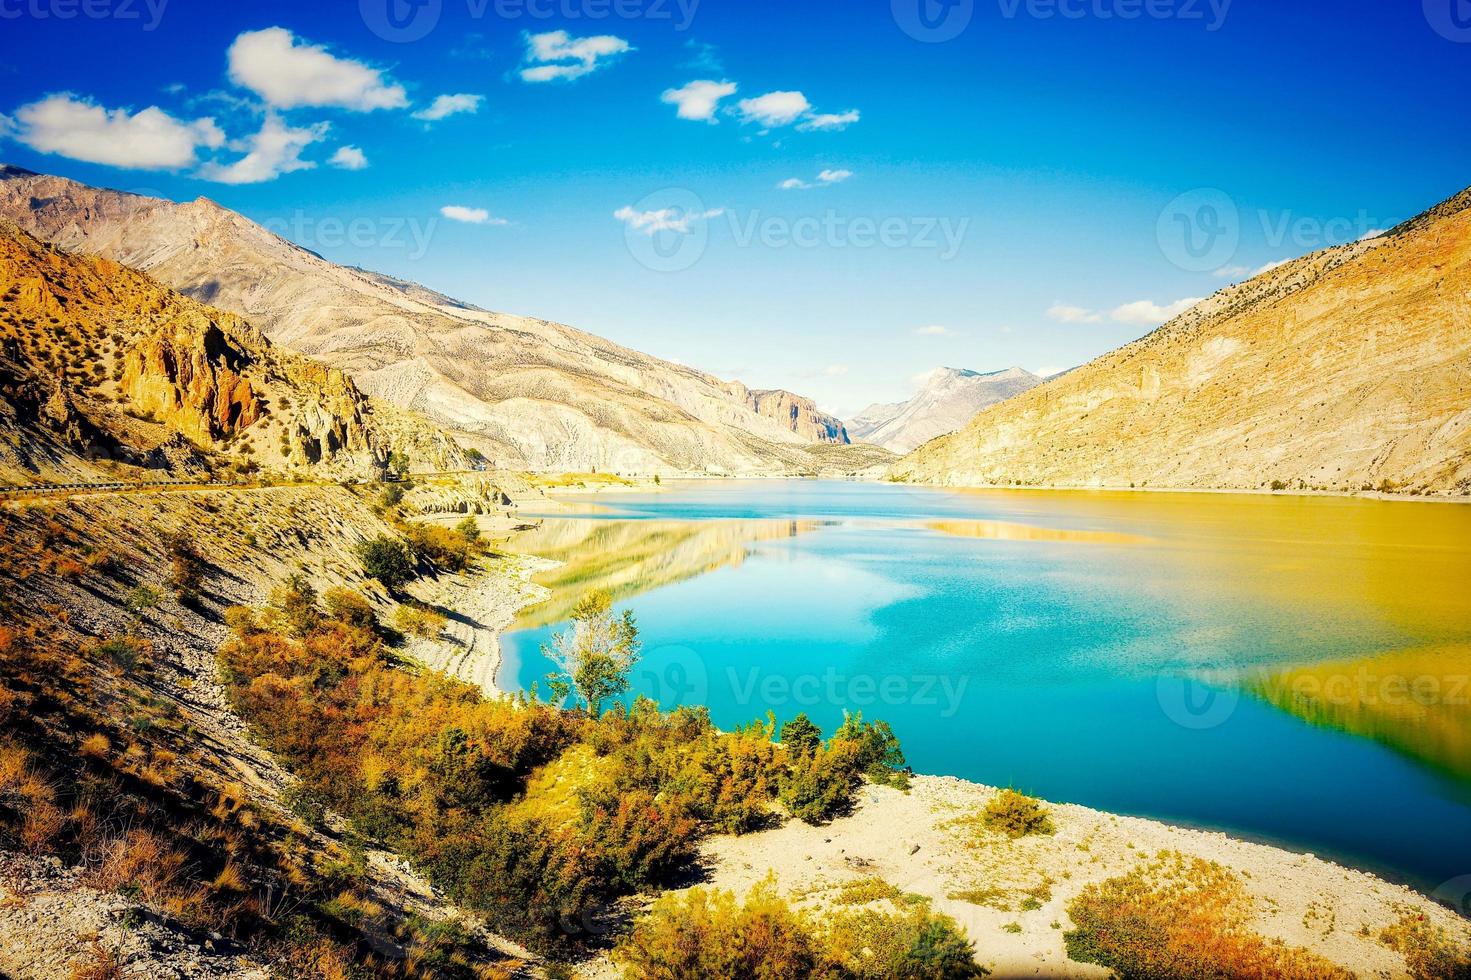 Panoramablick auf blaues Wasser von Chorokhi in der Türkei Artvin Region mit malerischem Berghintergrund im klaren sonnigen Herbsttag foto